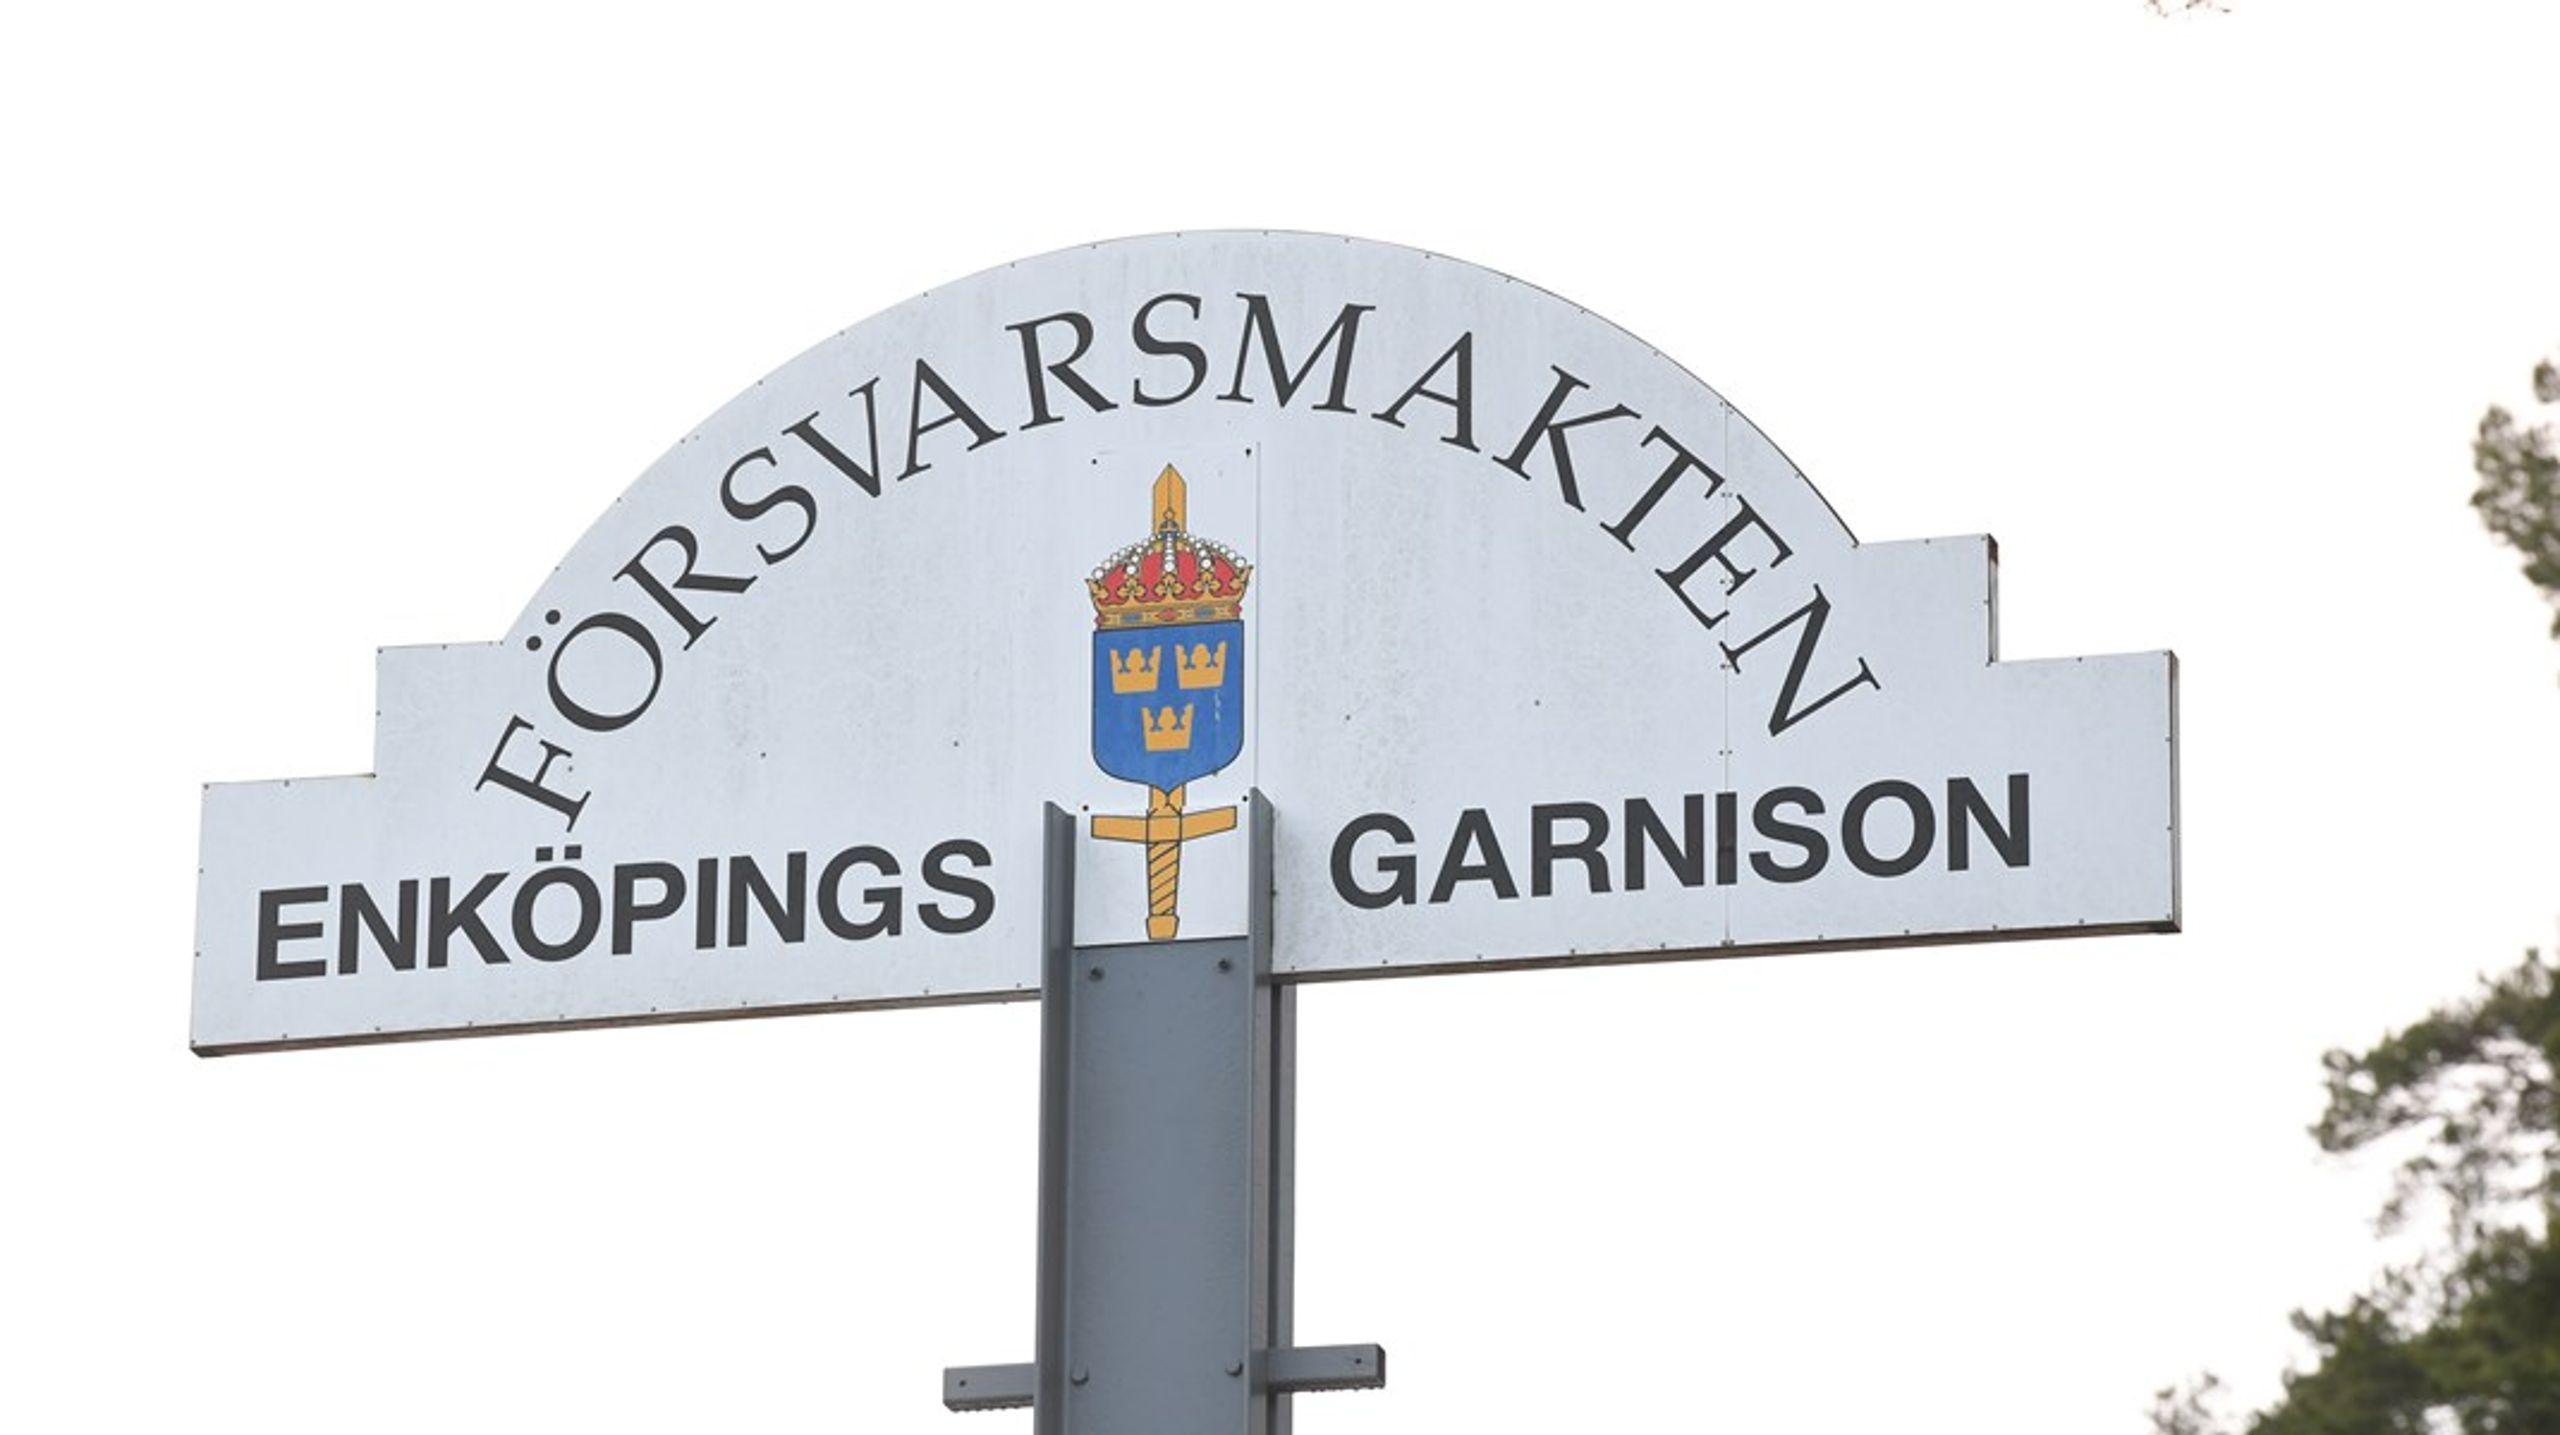 500 värnpliktiga skickades hem akut från Ledningsregementet i Enköping. Orsaken är allvarliga kränkningar, rapporterar Dagens nyheter, brist på mat, vulgärt språk och kollektiva bestraffningar.